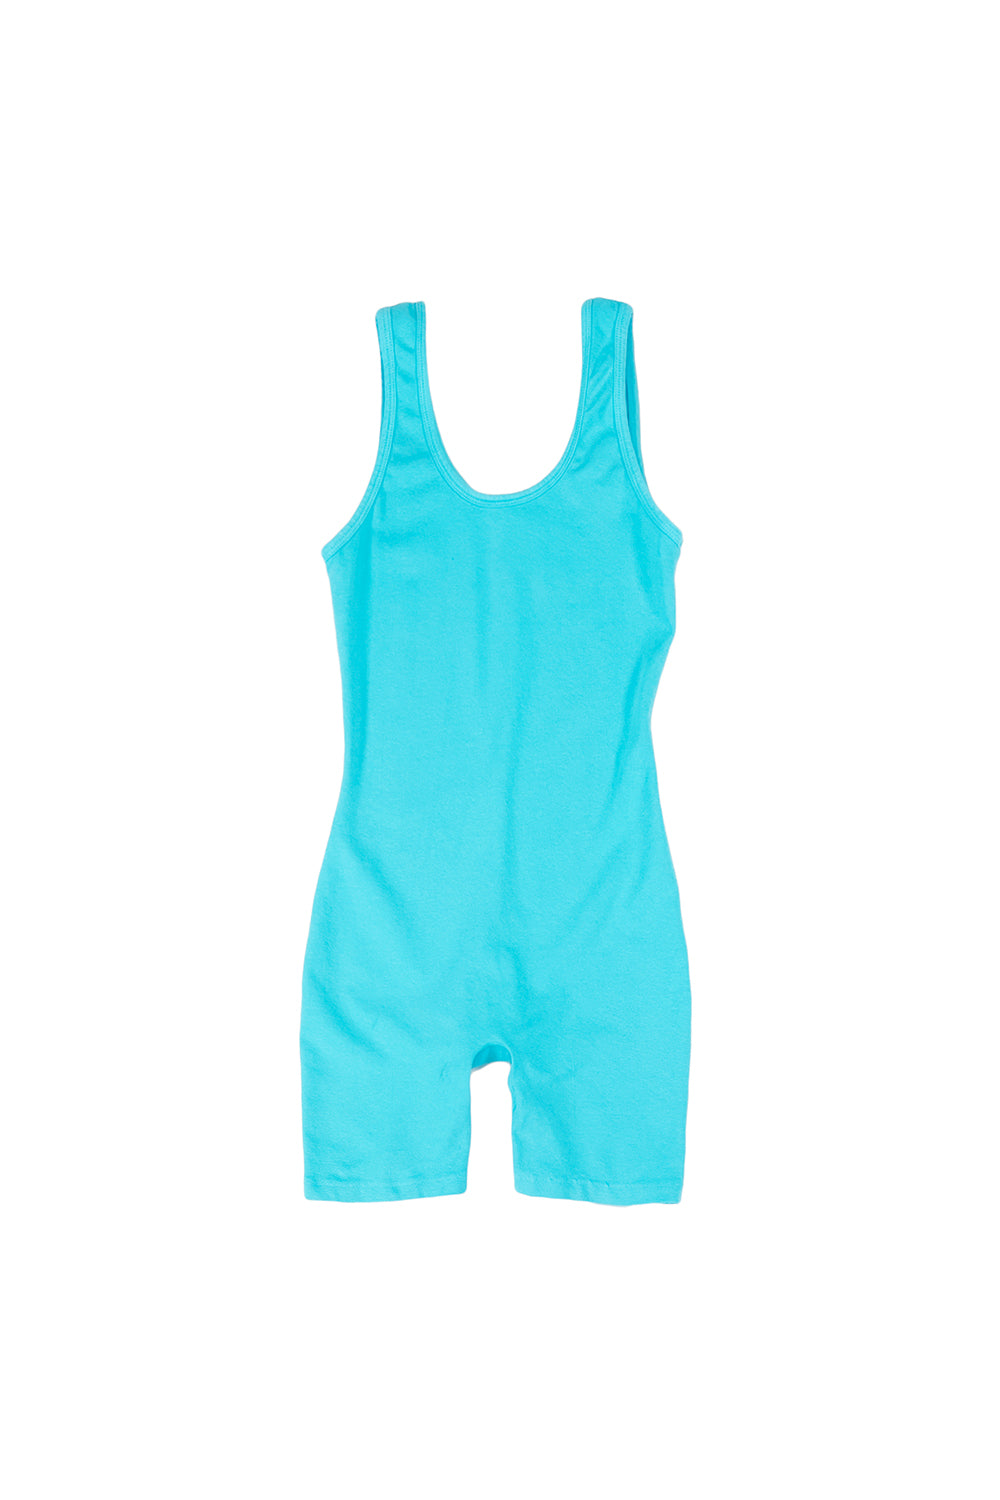 Singlet - Sale Colors | Jungmaven Hemp Clothing & Accessories / Color: Caribbean Blue